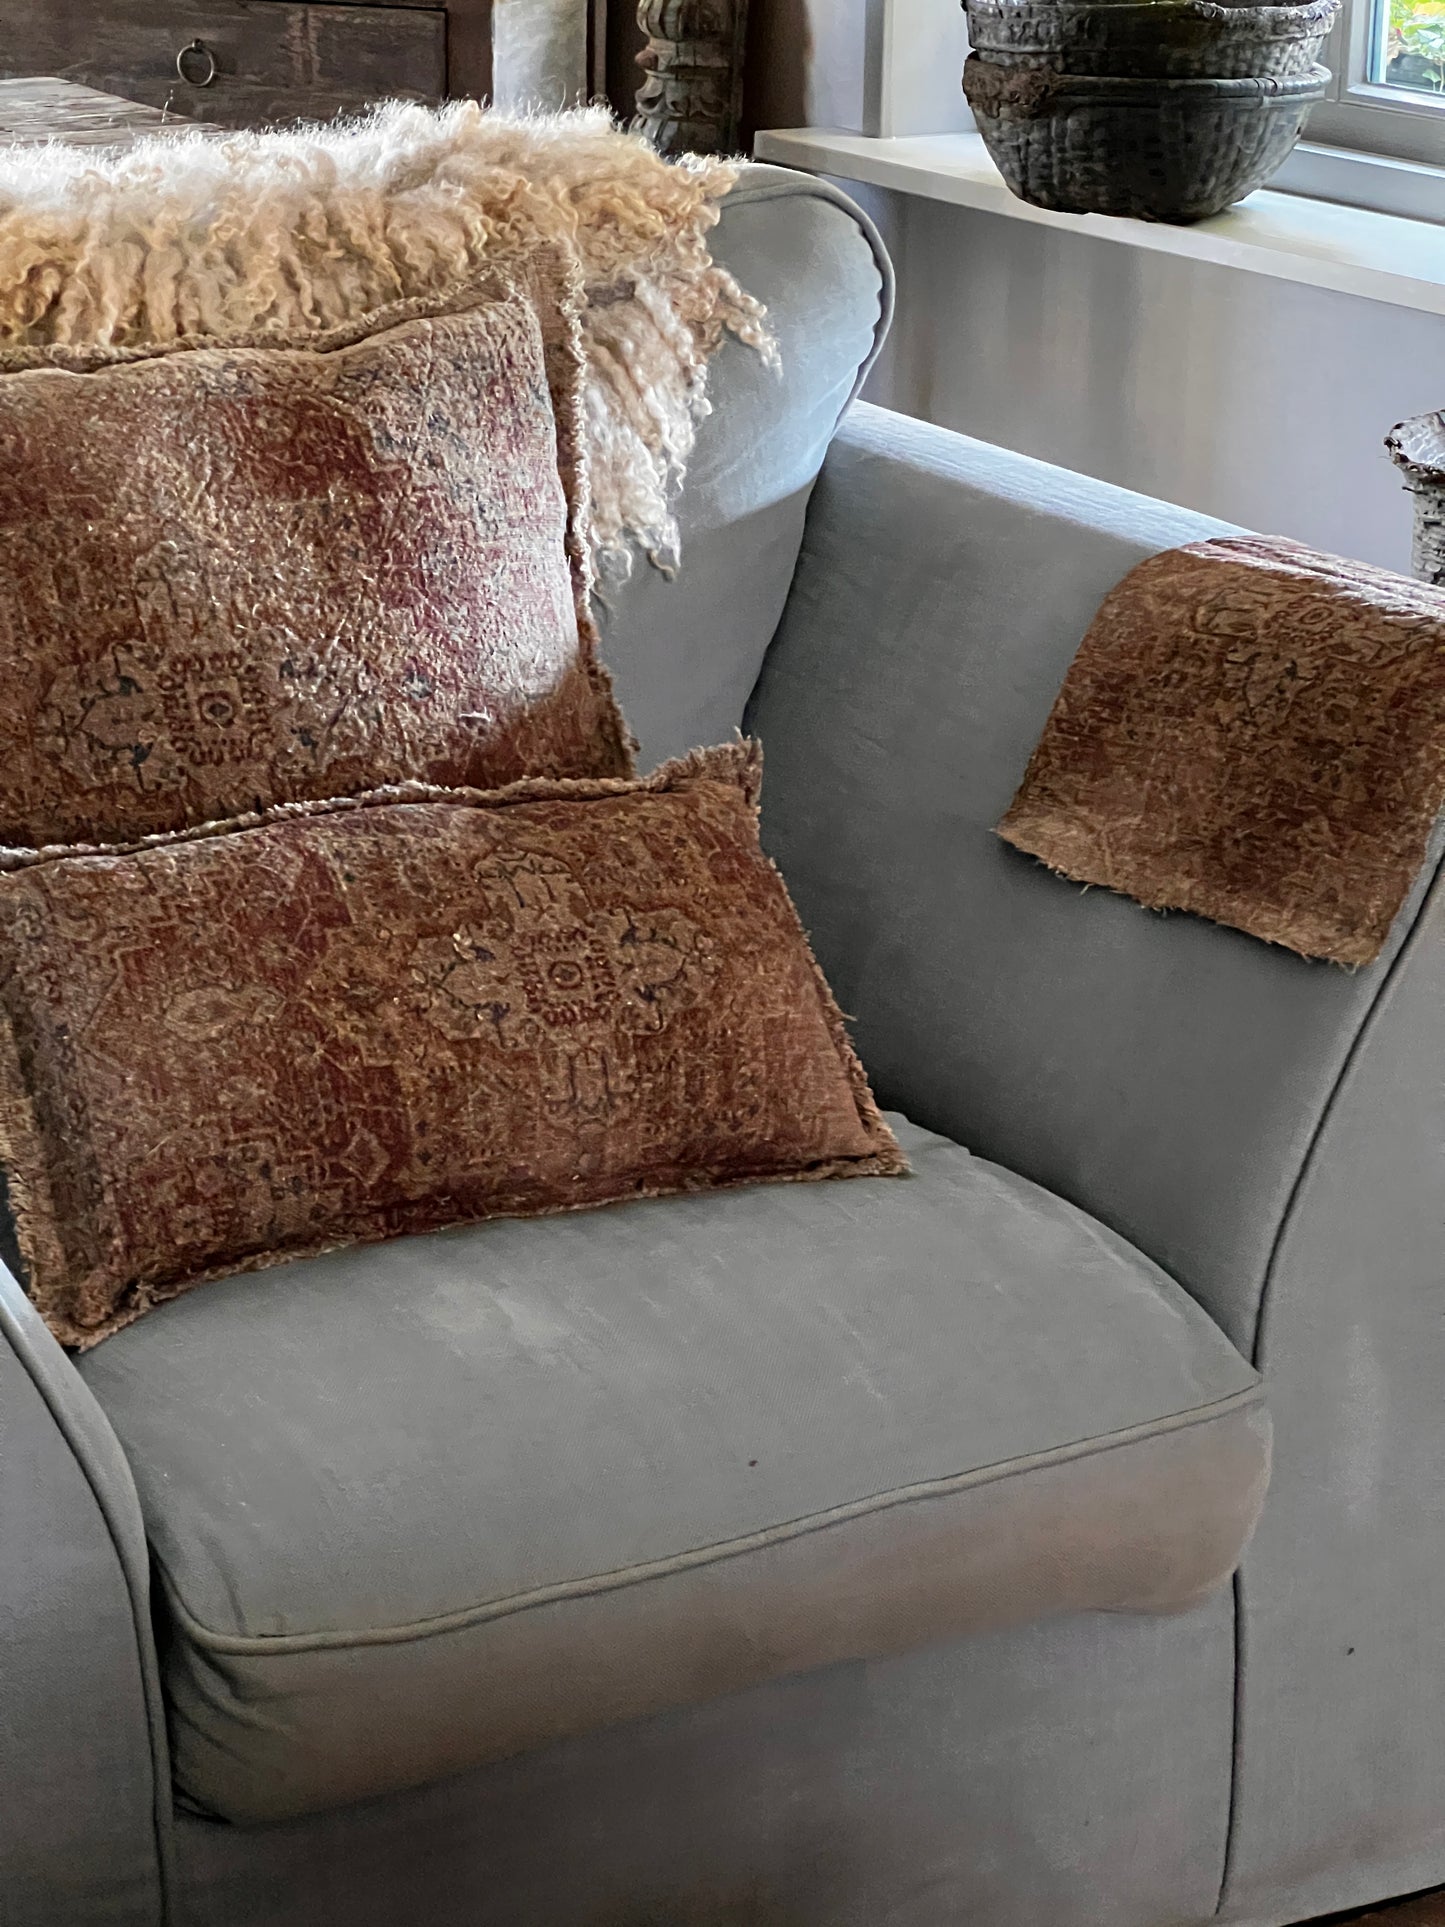 Shabby Kilim cushion 50x50 cm